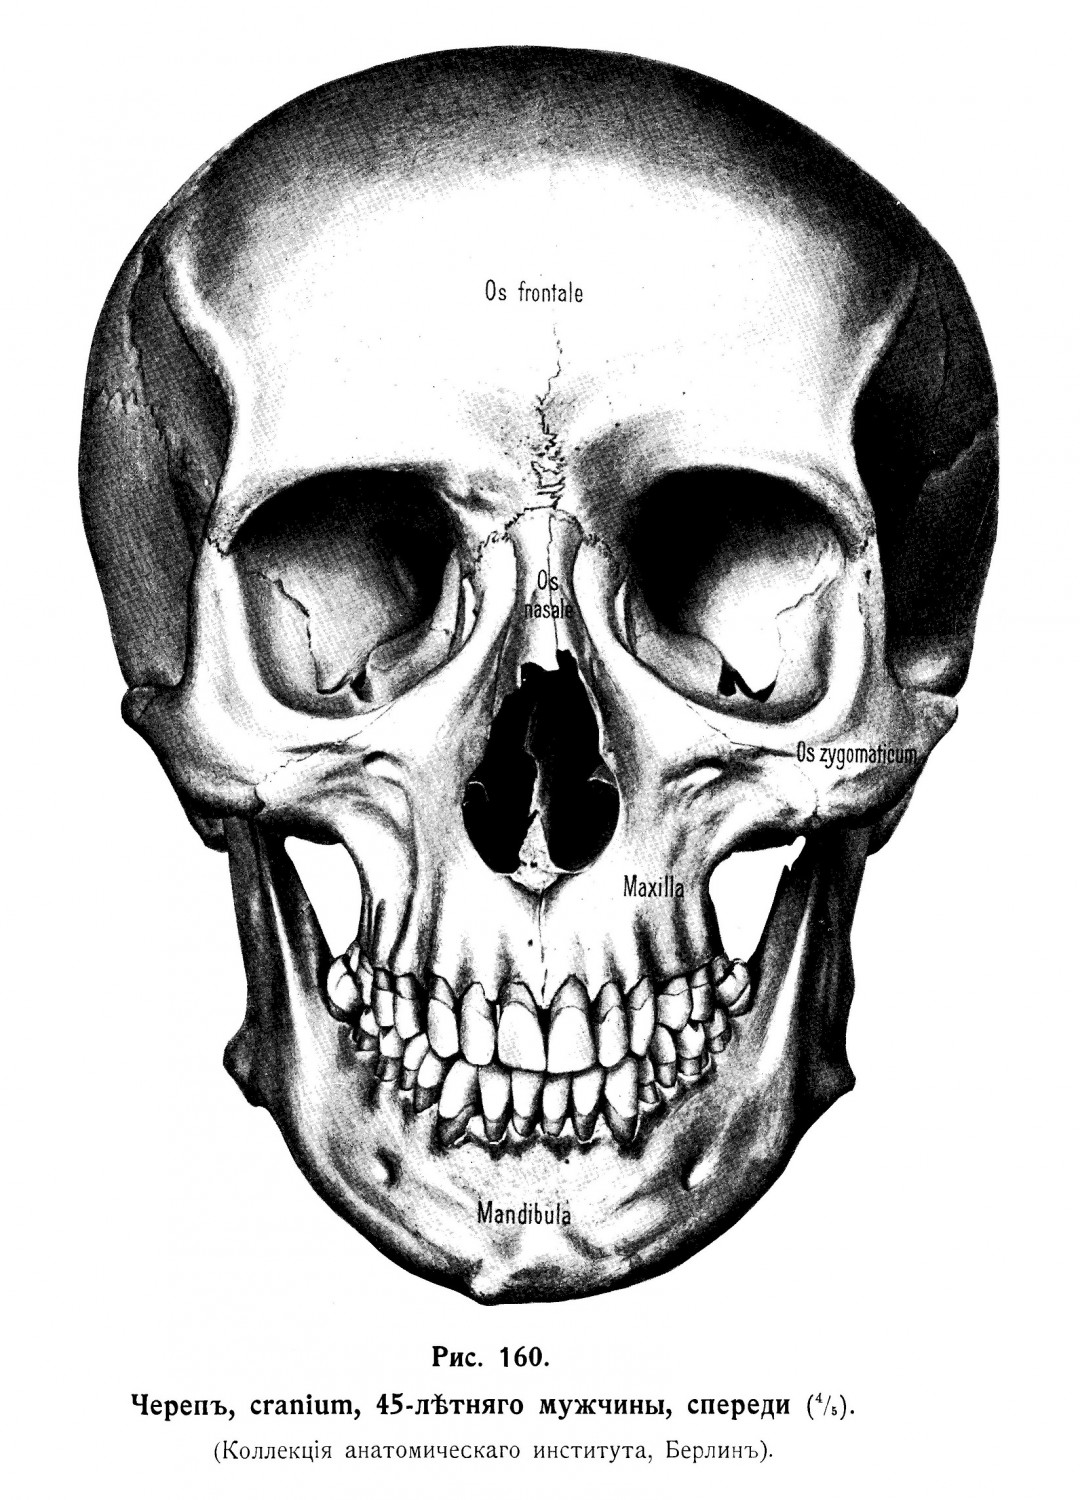 Наружная поверхность черепа